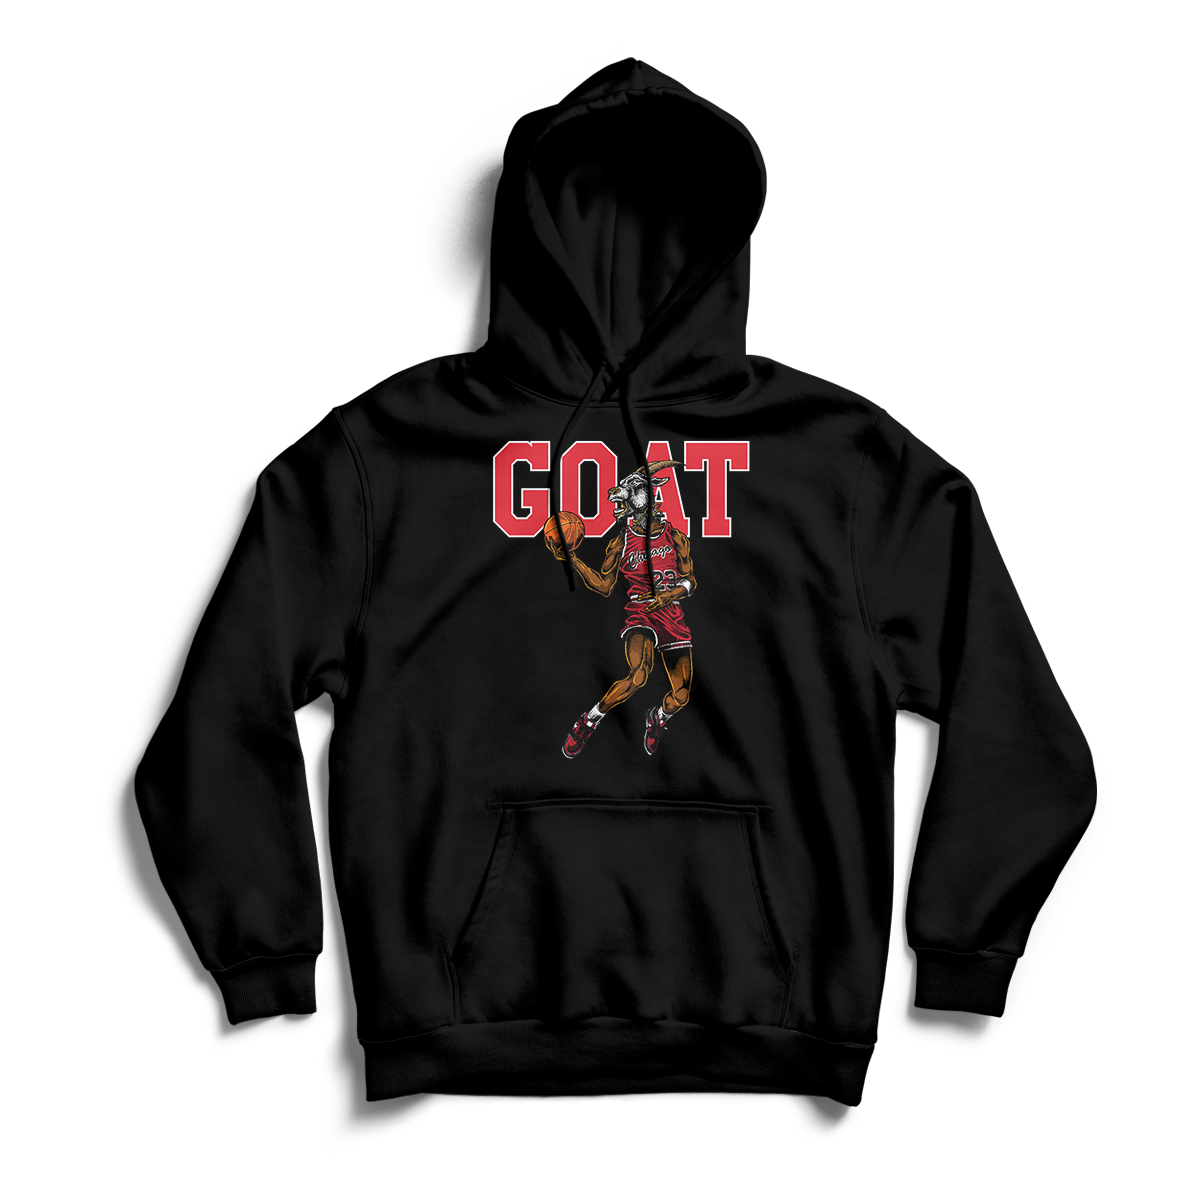 'Jordan Goat' in Bred 11 Unisex Pullover Hoodie